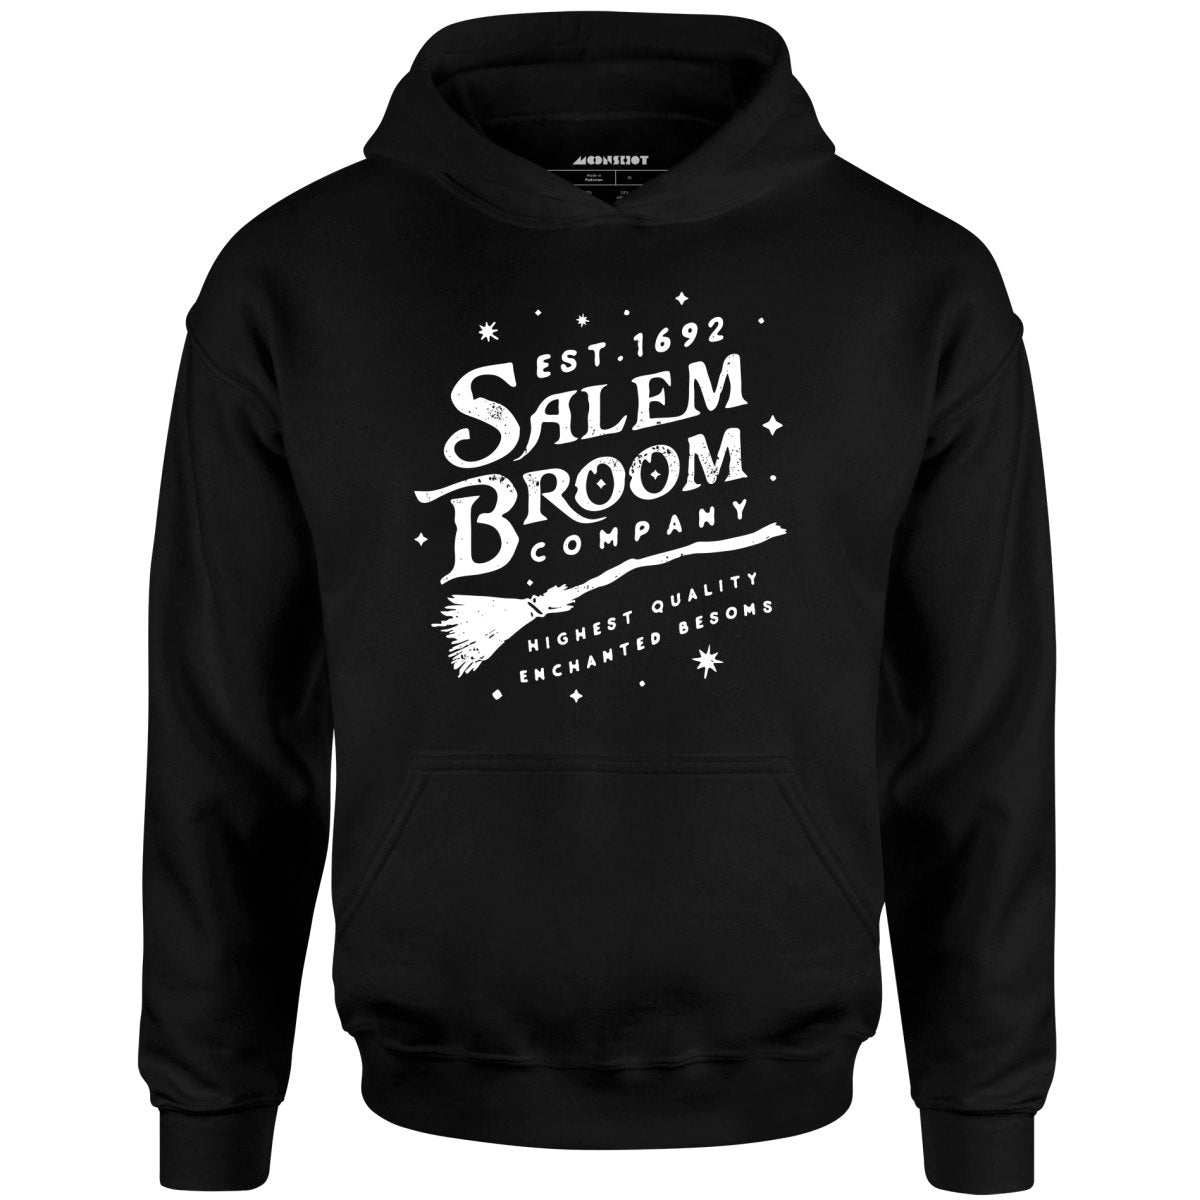 Salem Broom Company - Unisex Hoodie